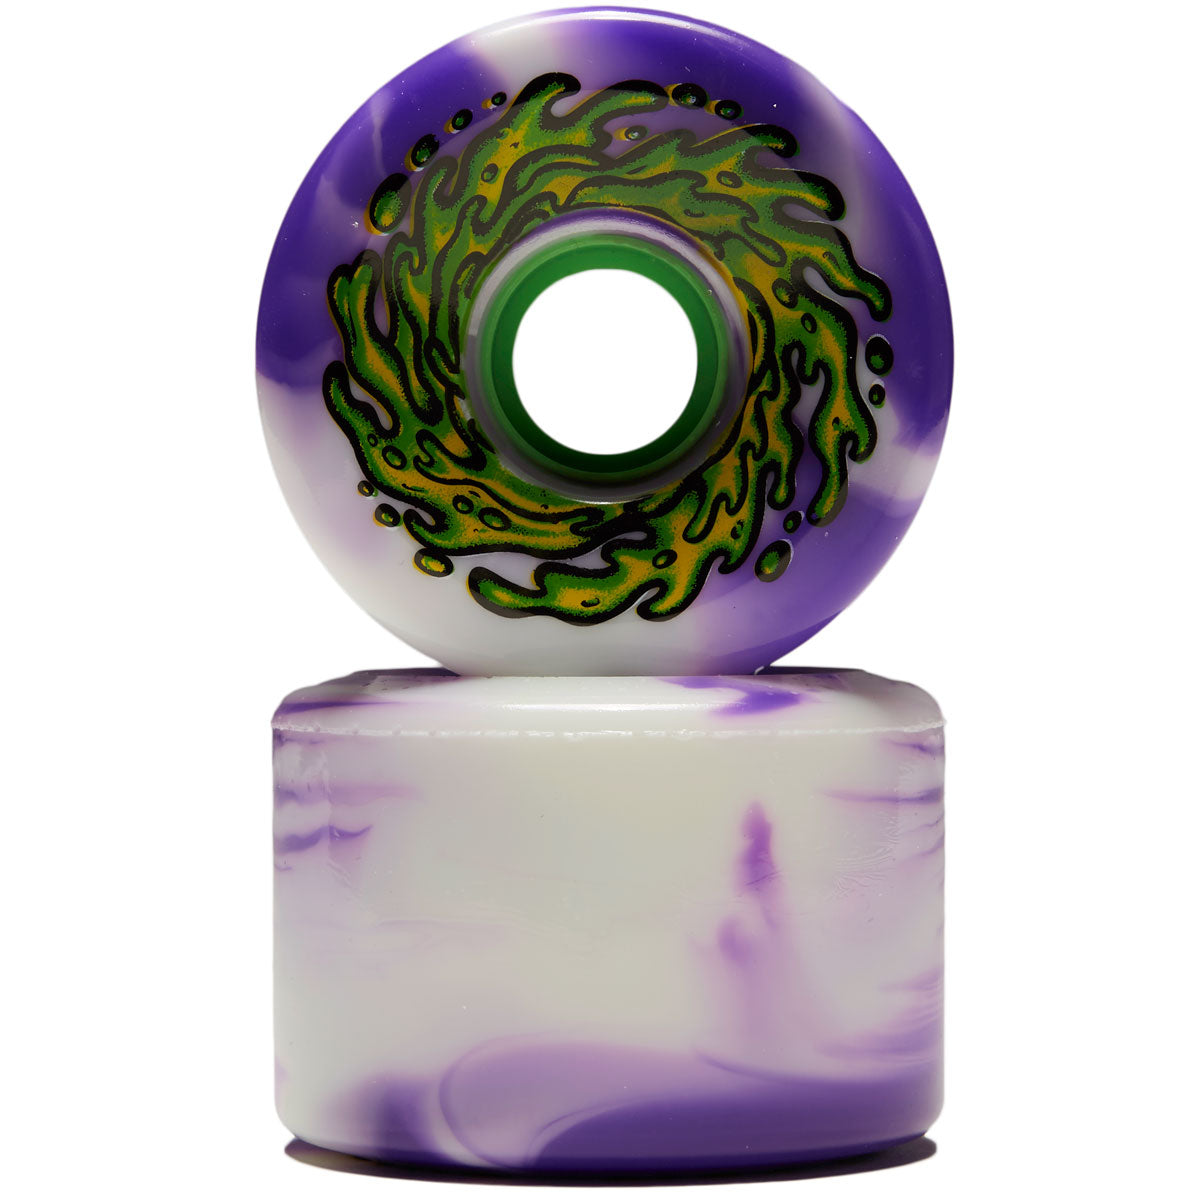 Slime Balls OG Slime 78a Skateboard Wheels - Purple/White Swirl - 66mm image 2